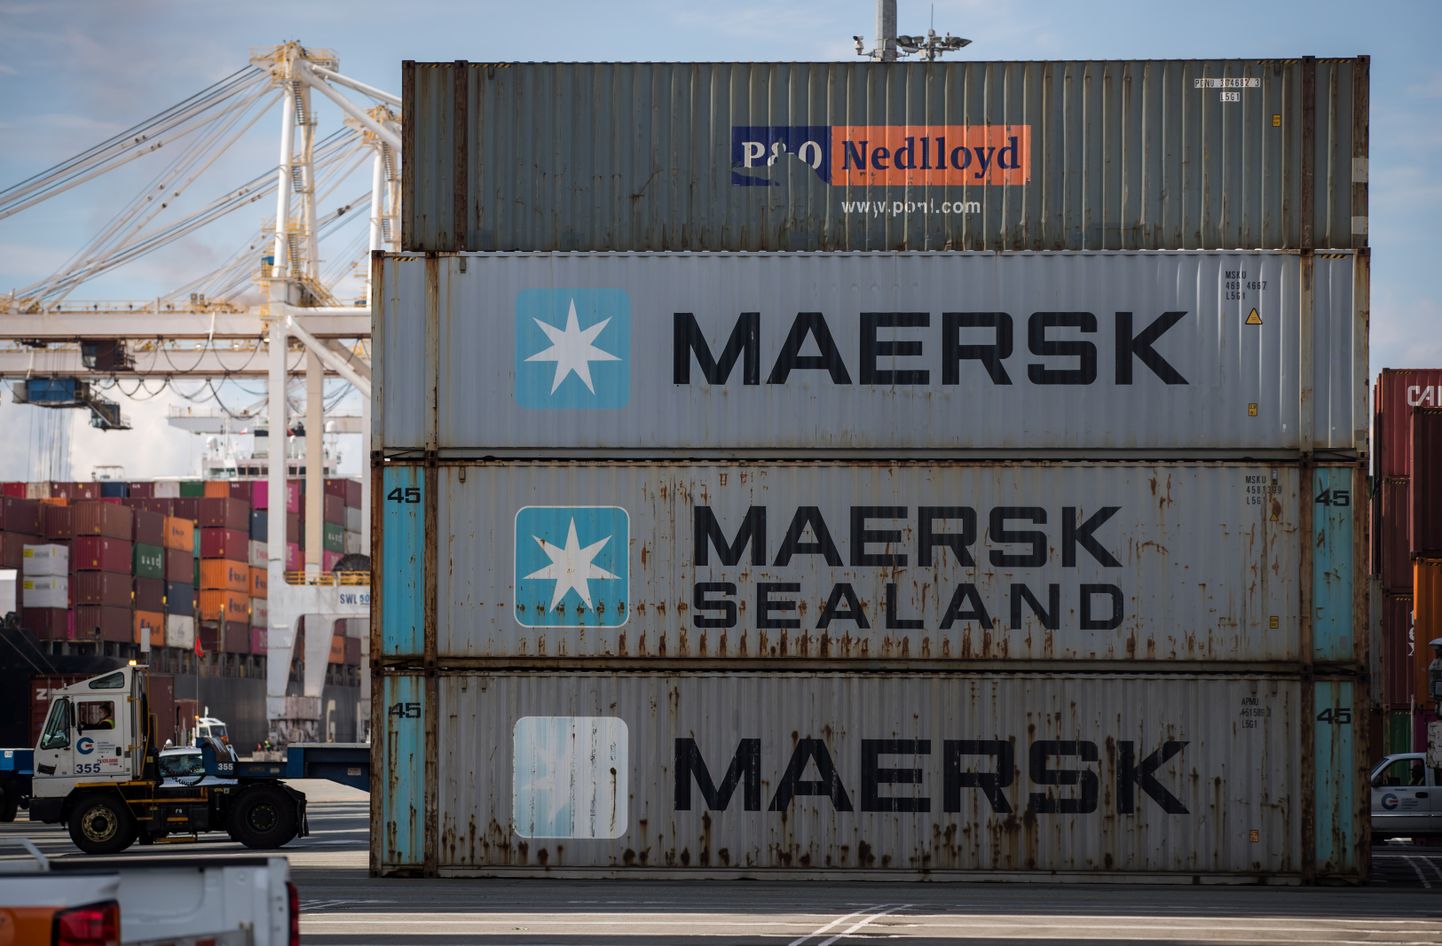 Taani laevandus- ja logistikakonglomeraadi Maersk konteinerid sadamas. Pilt on illustratiivne.